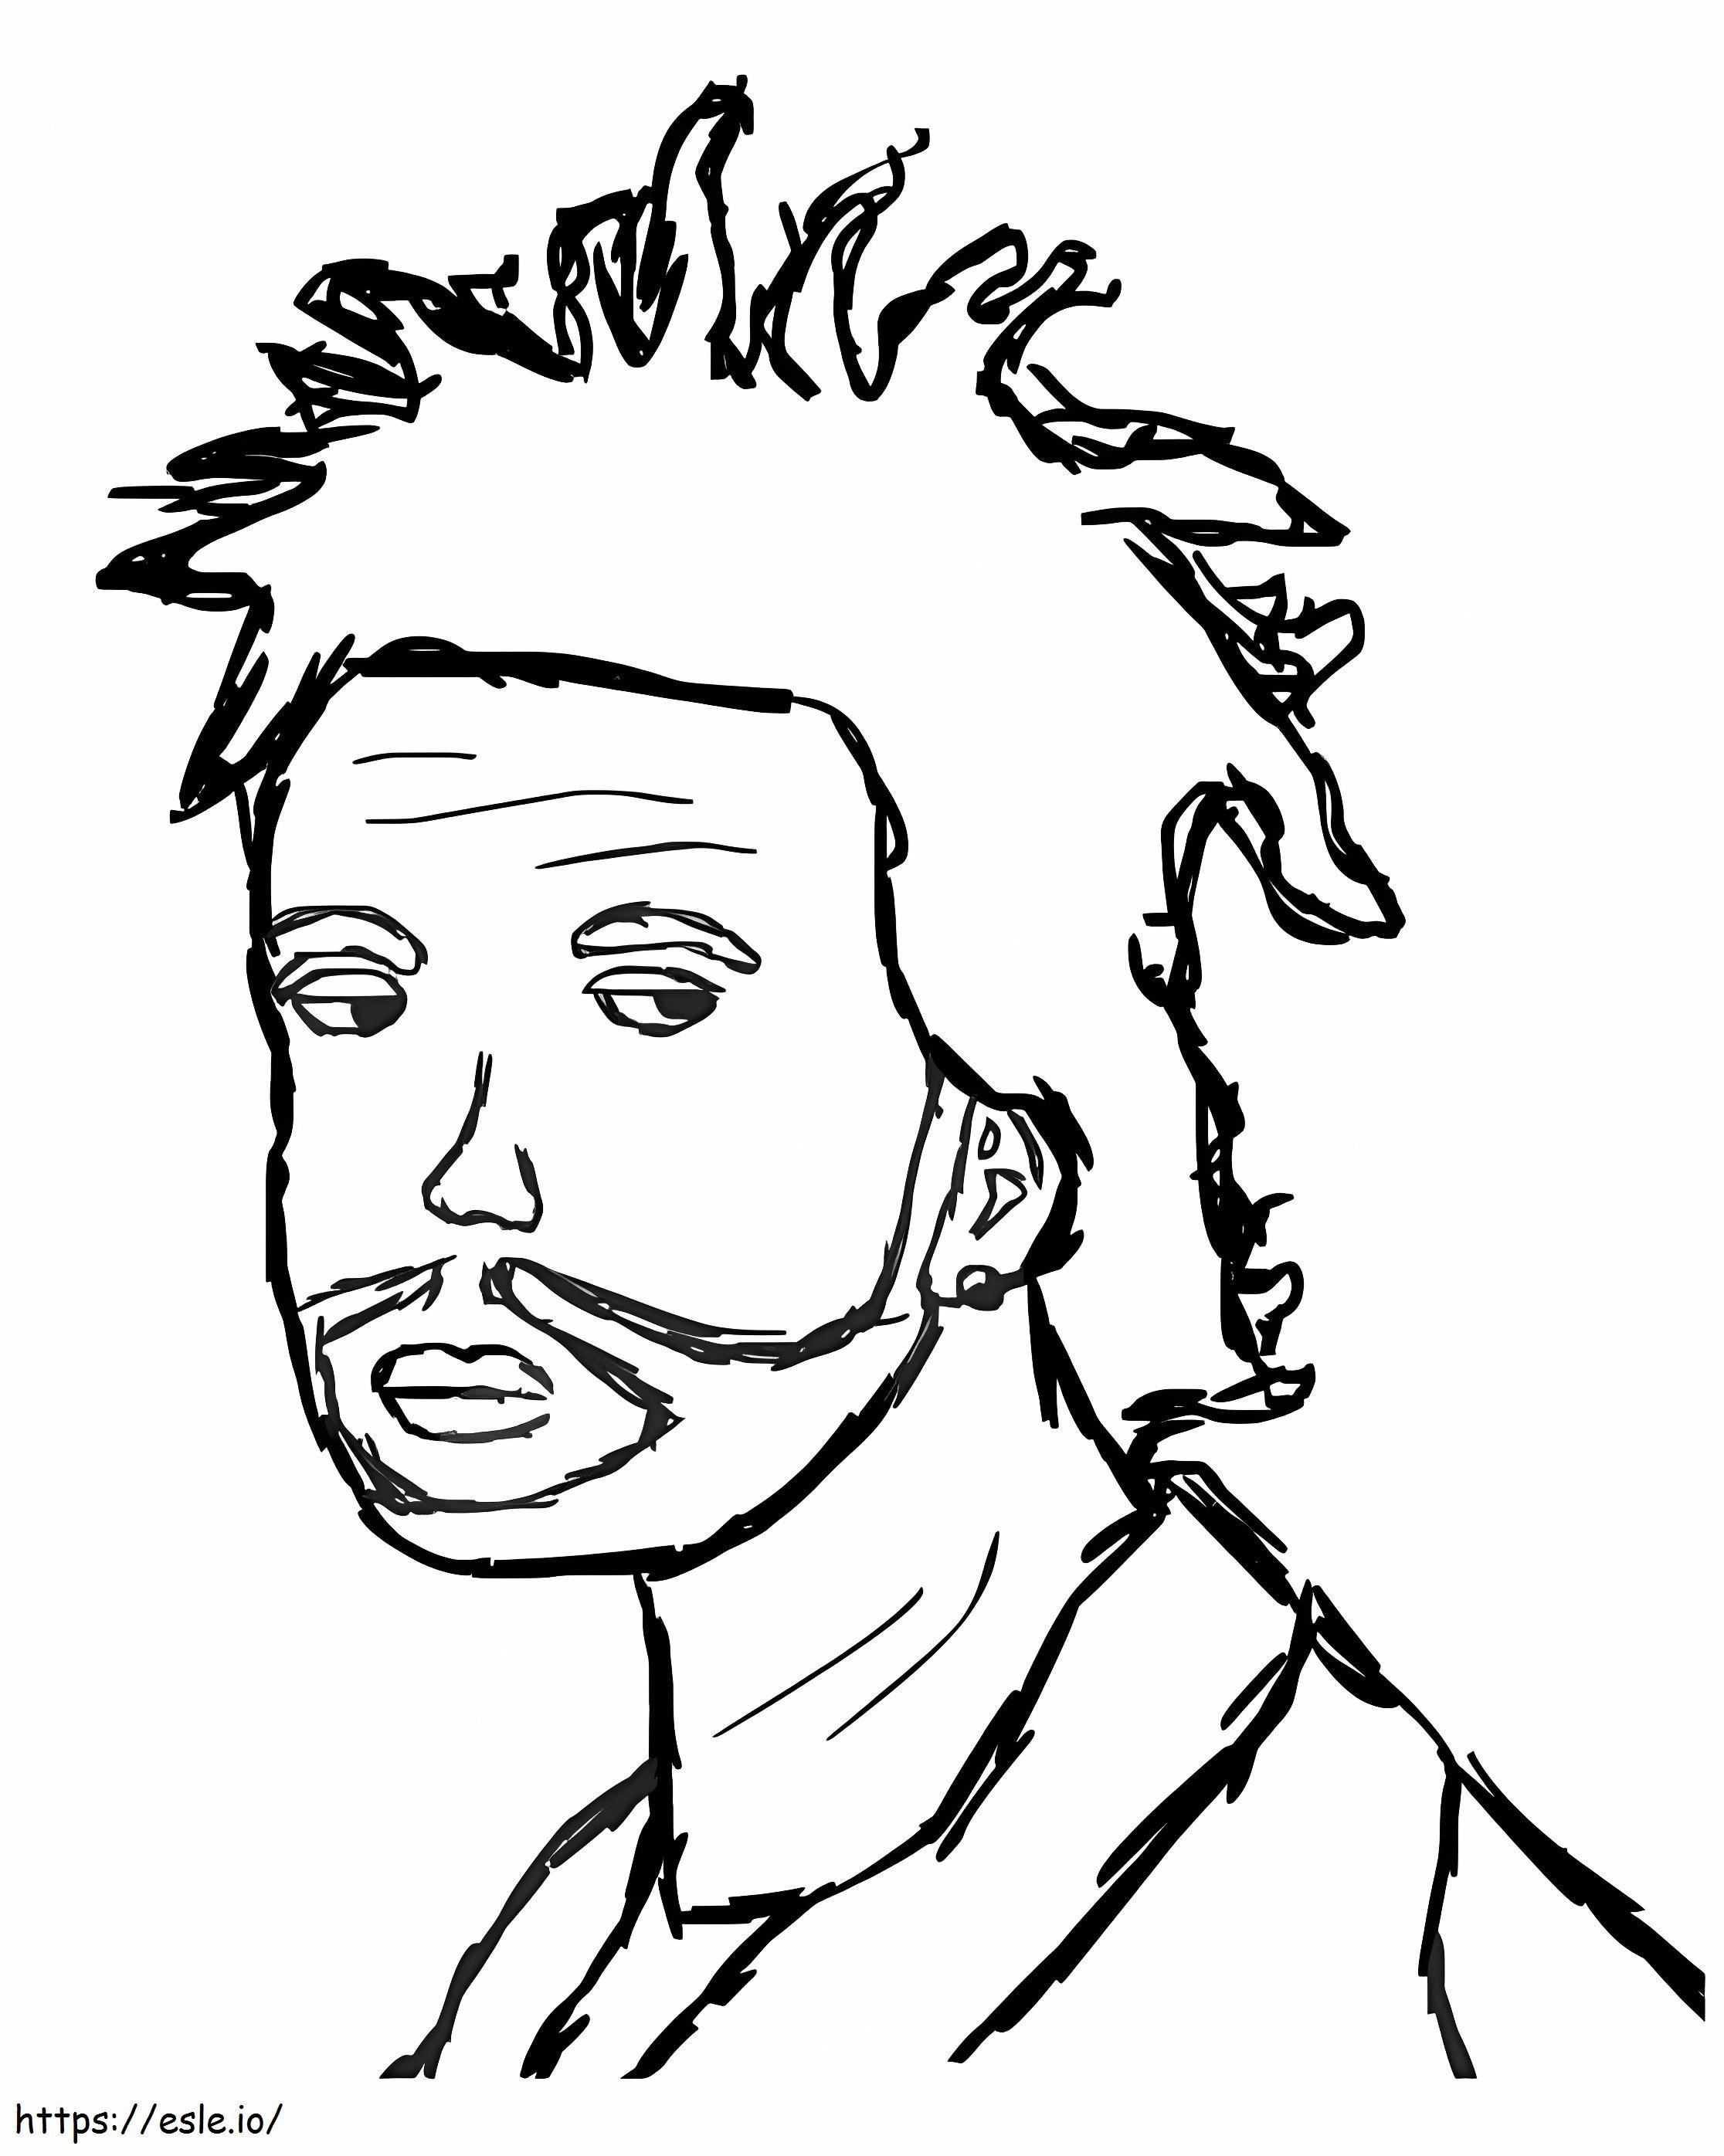 El boceto de Weeknd para colorear